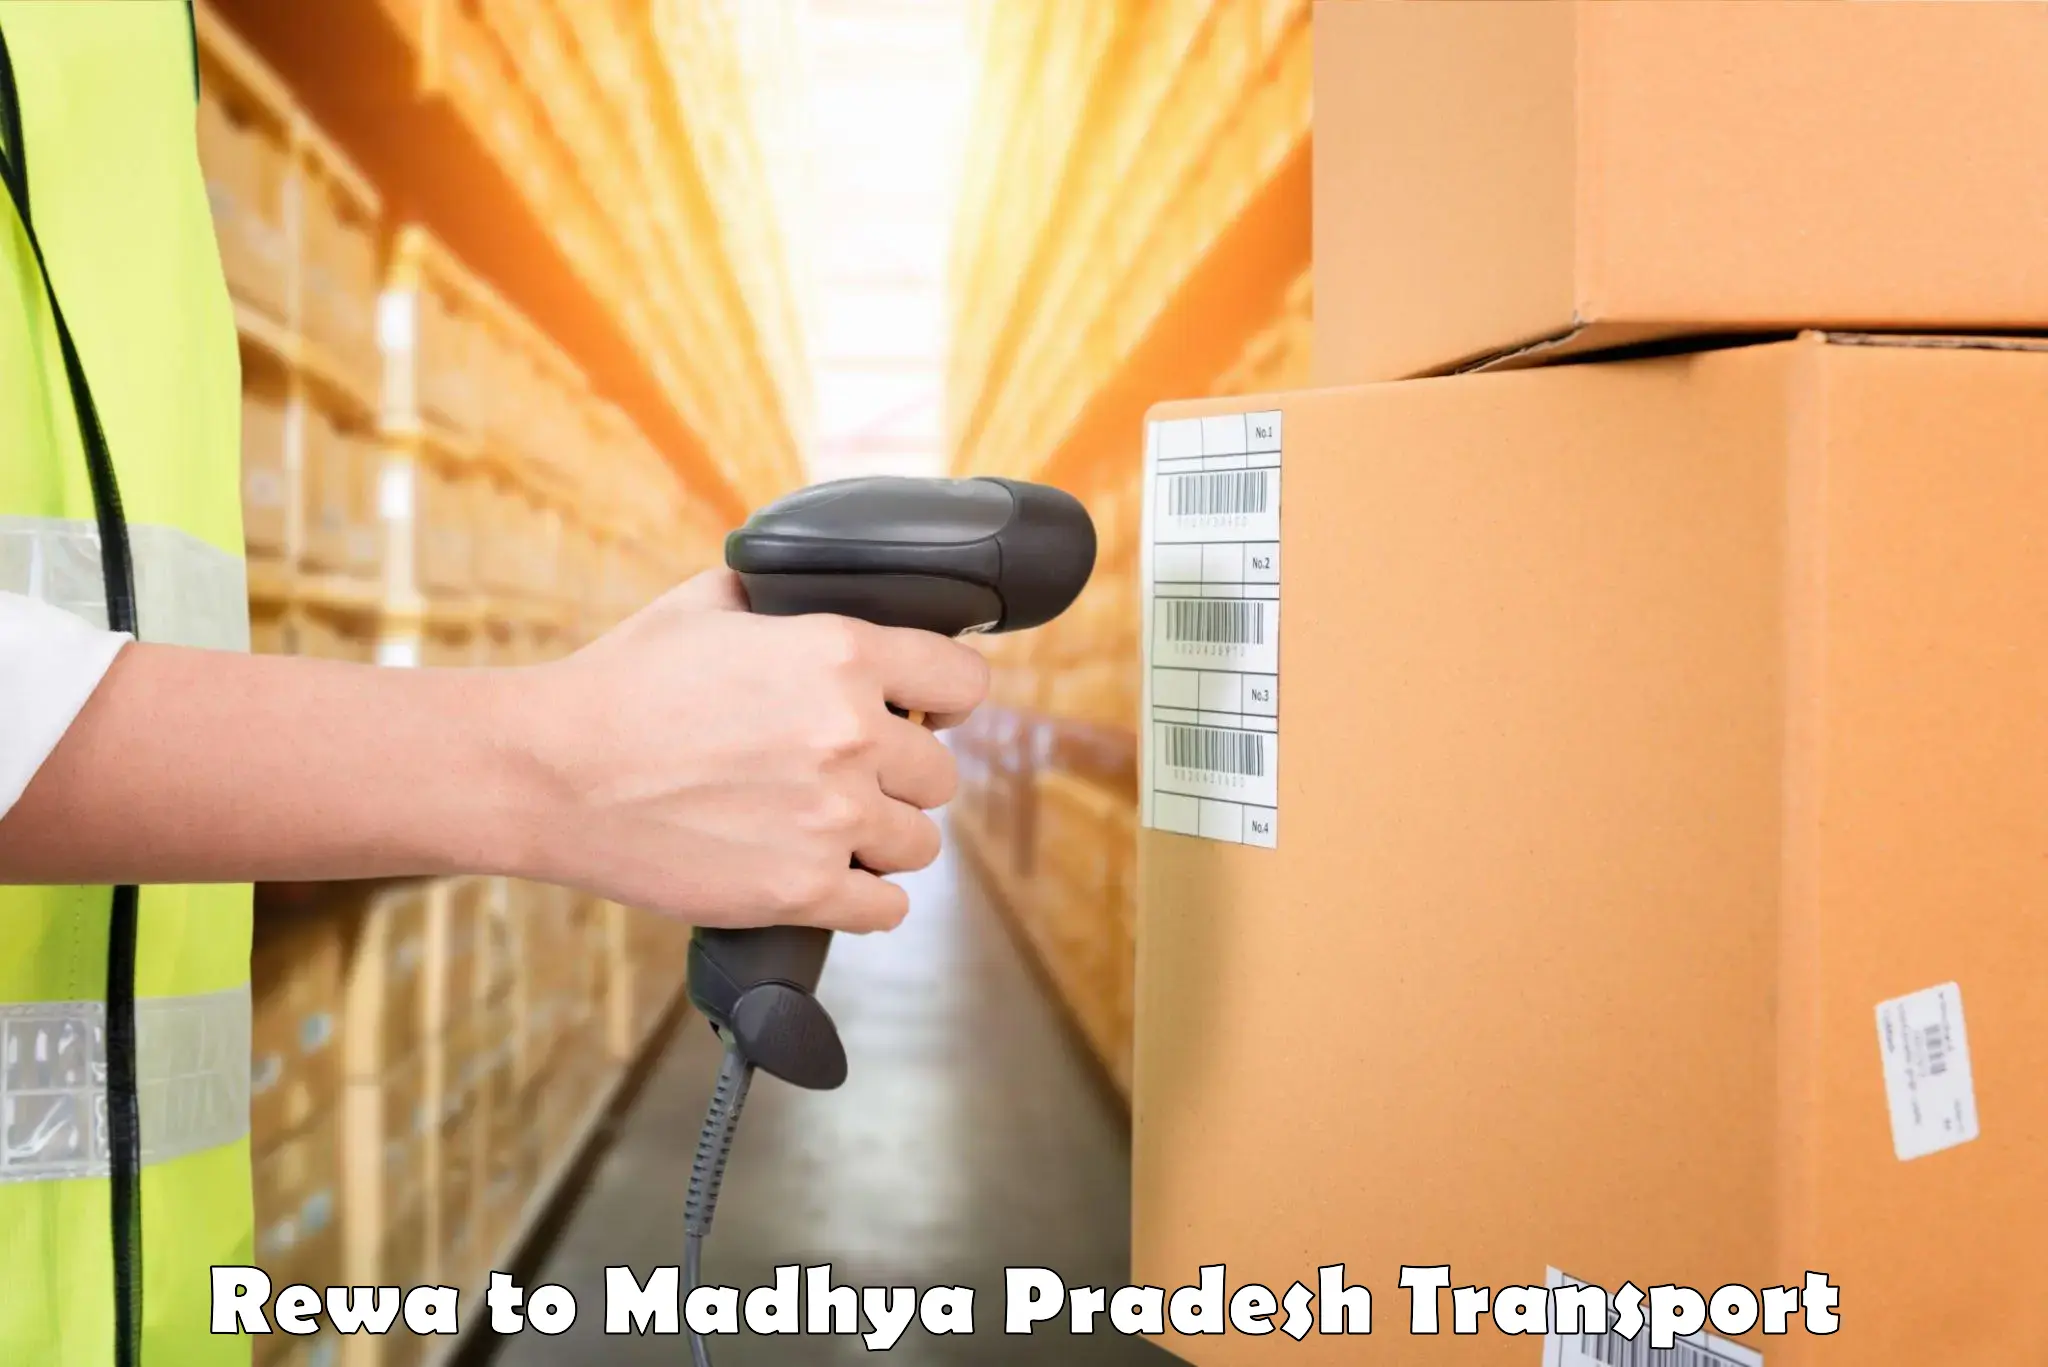 Furniture transport service Rewa to Chhindwara